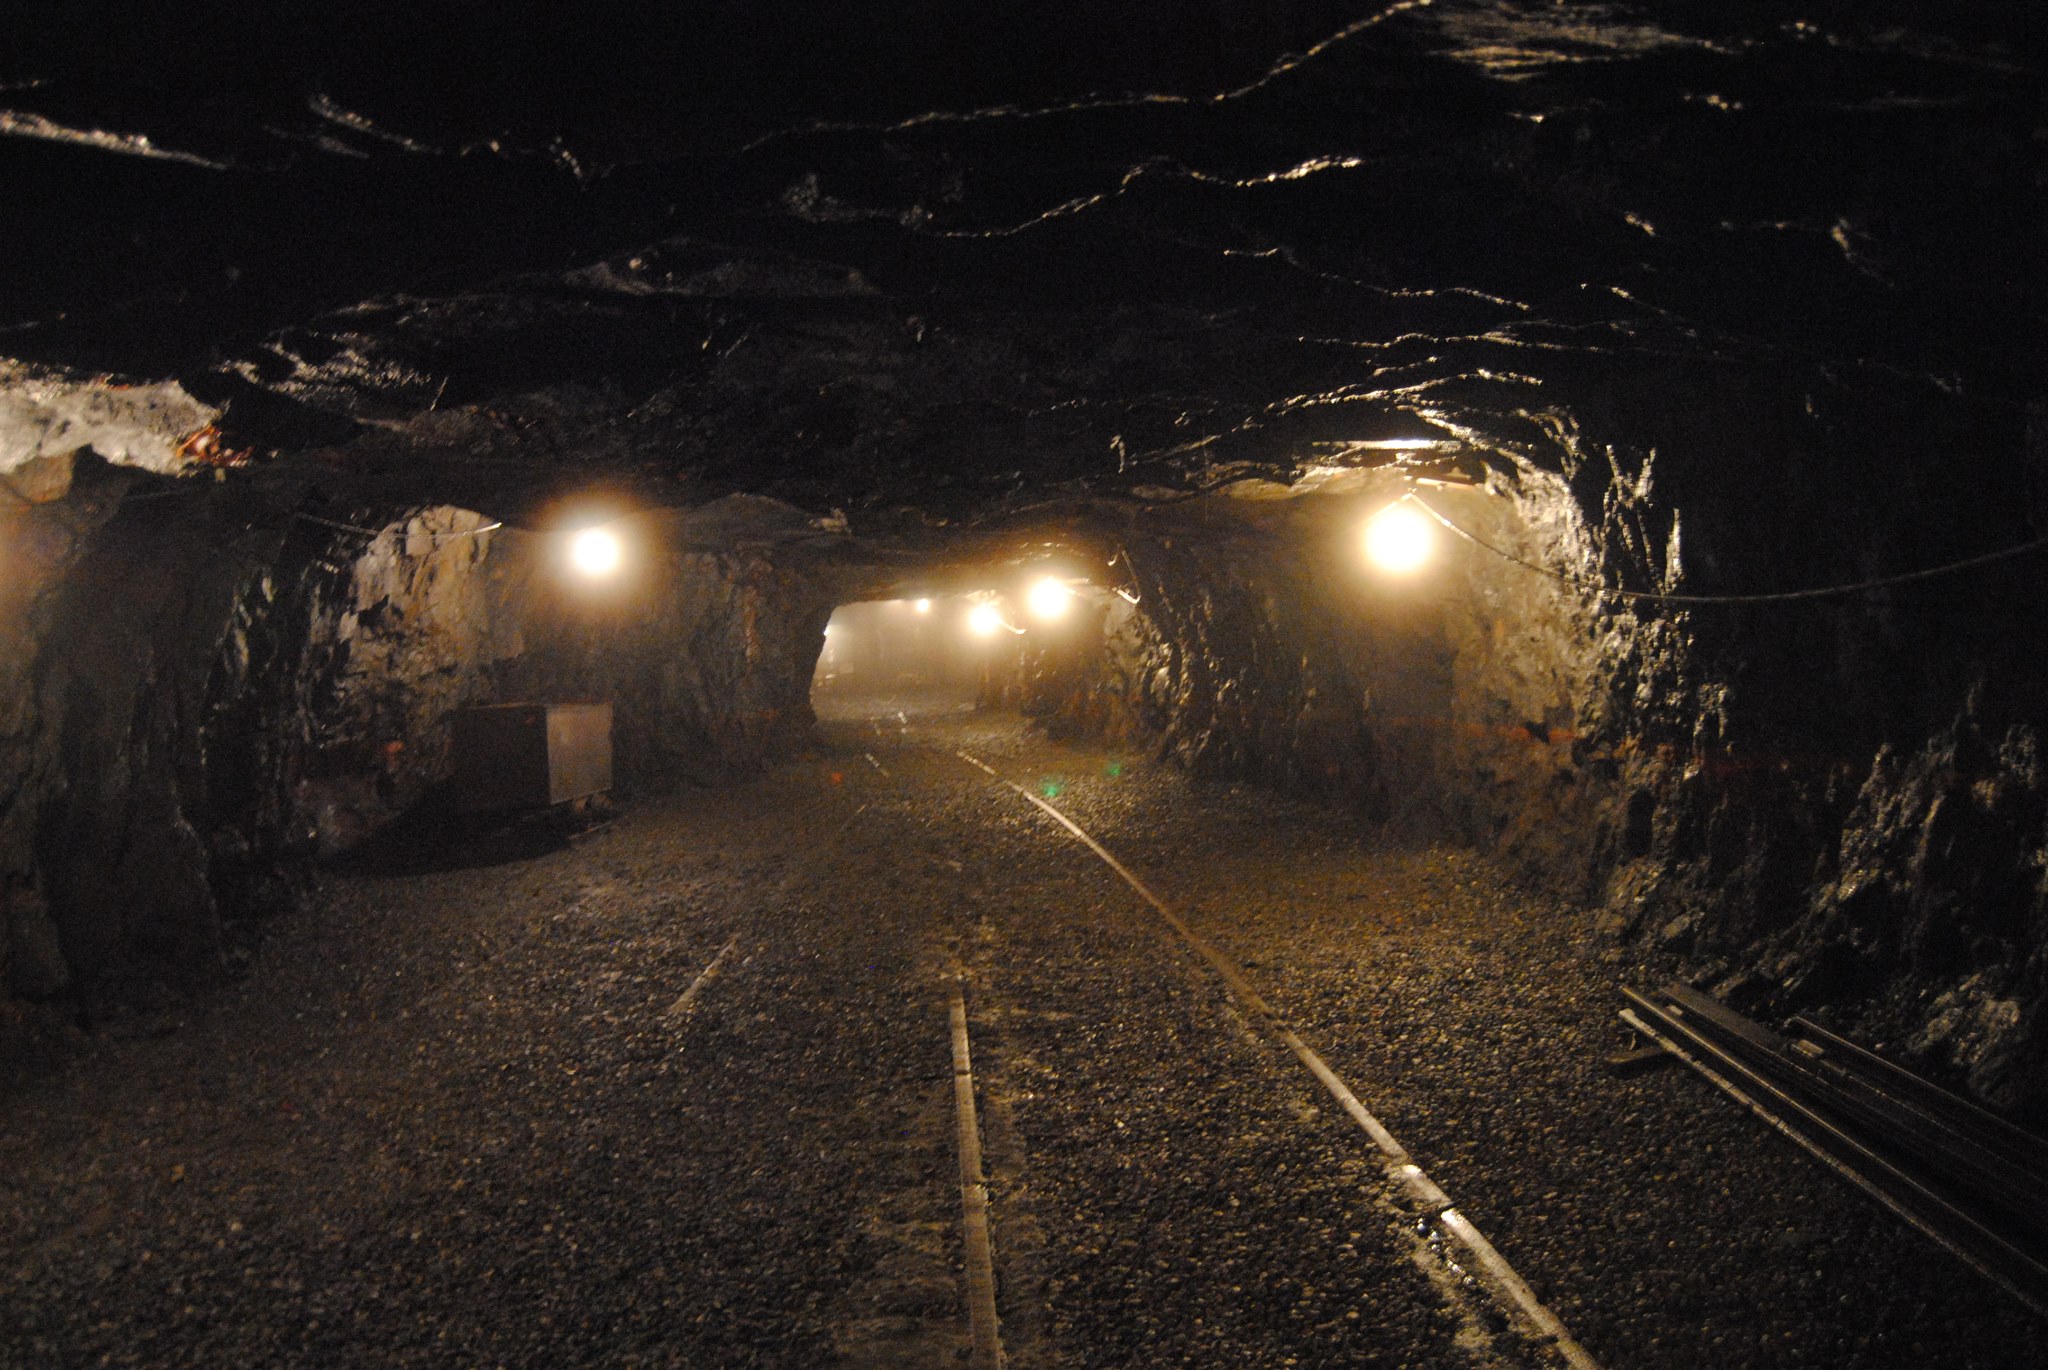 246 maden sahası ihale edilecek